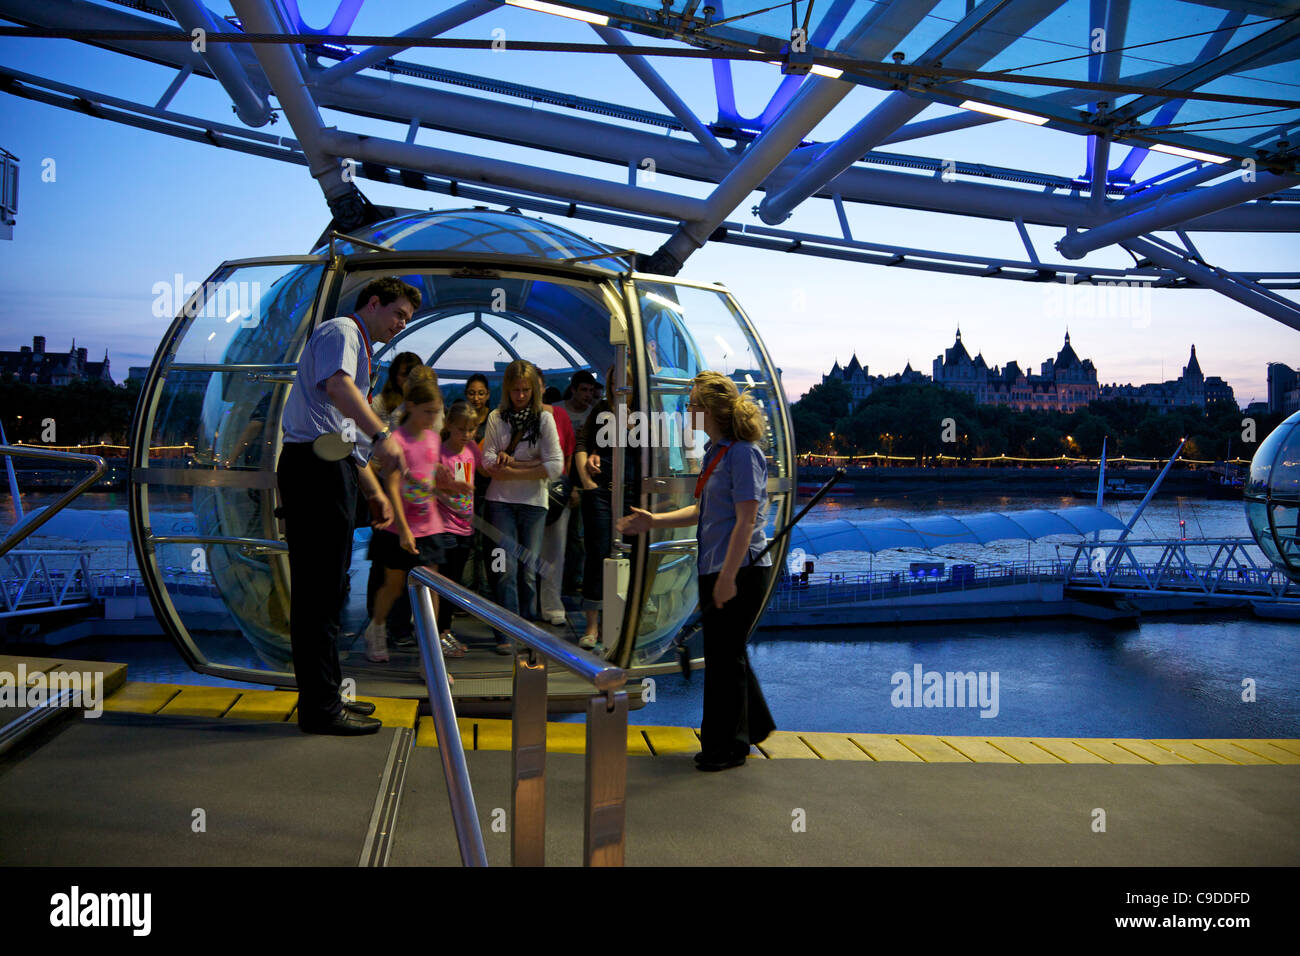 Avis de voyageurs de pod capsule de la London Eye au crépuscule, South Bank, Londres, Angleterre, Royaume-Uni, Royaume-Uni, GO, Grande-Bretagne, Banque D'Images